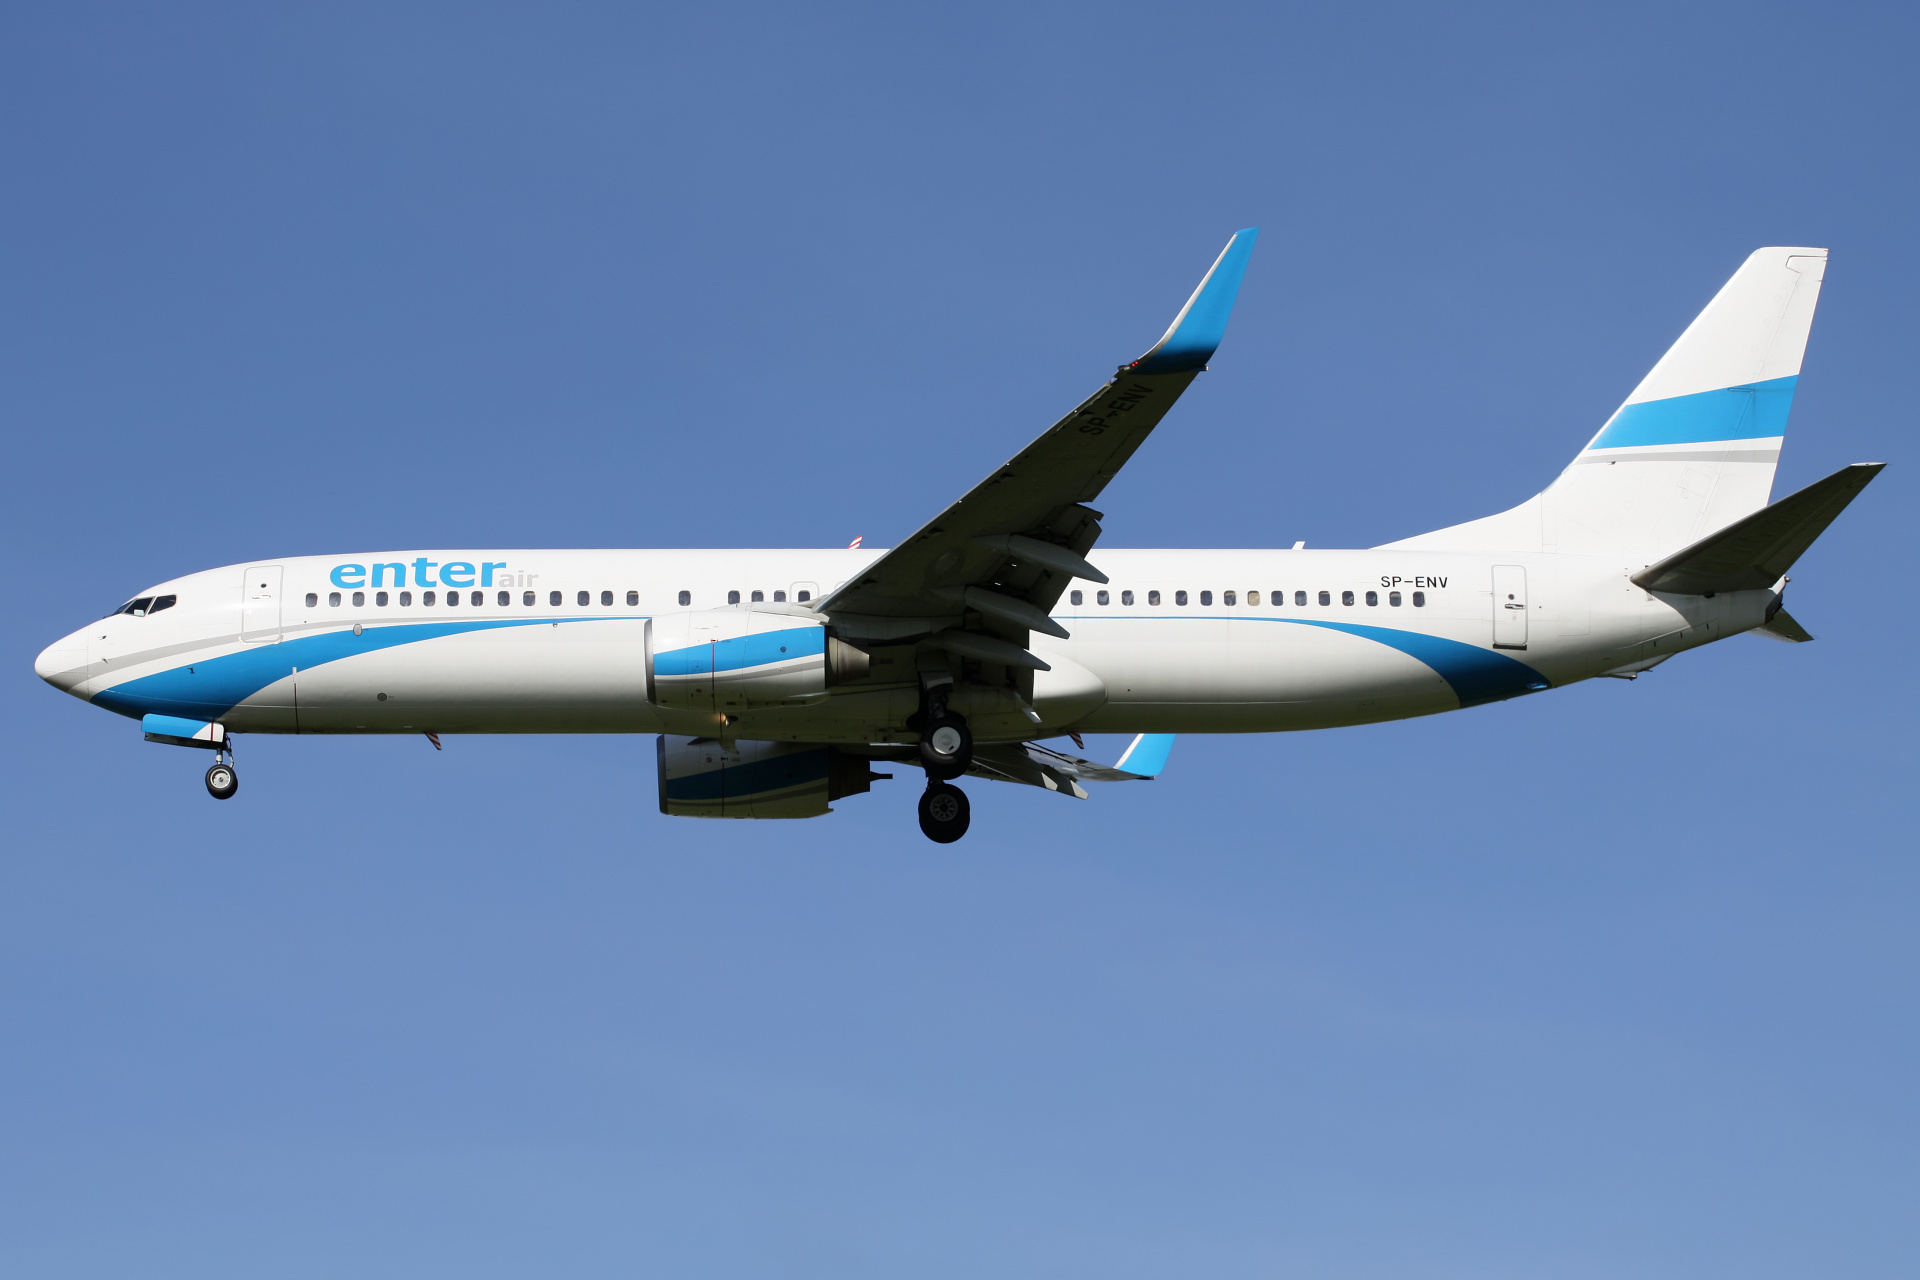 SP-ENV (Samoloty » Spotting na EPWA » Boeing 737-800 » Enter Air)